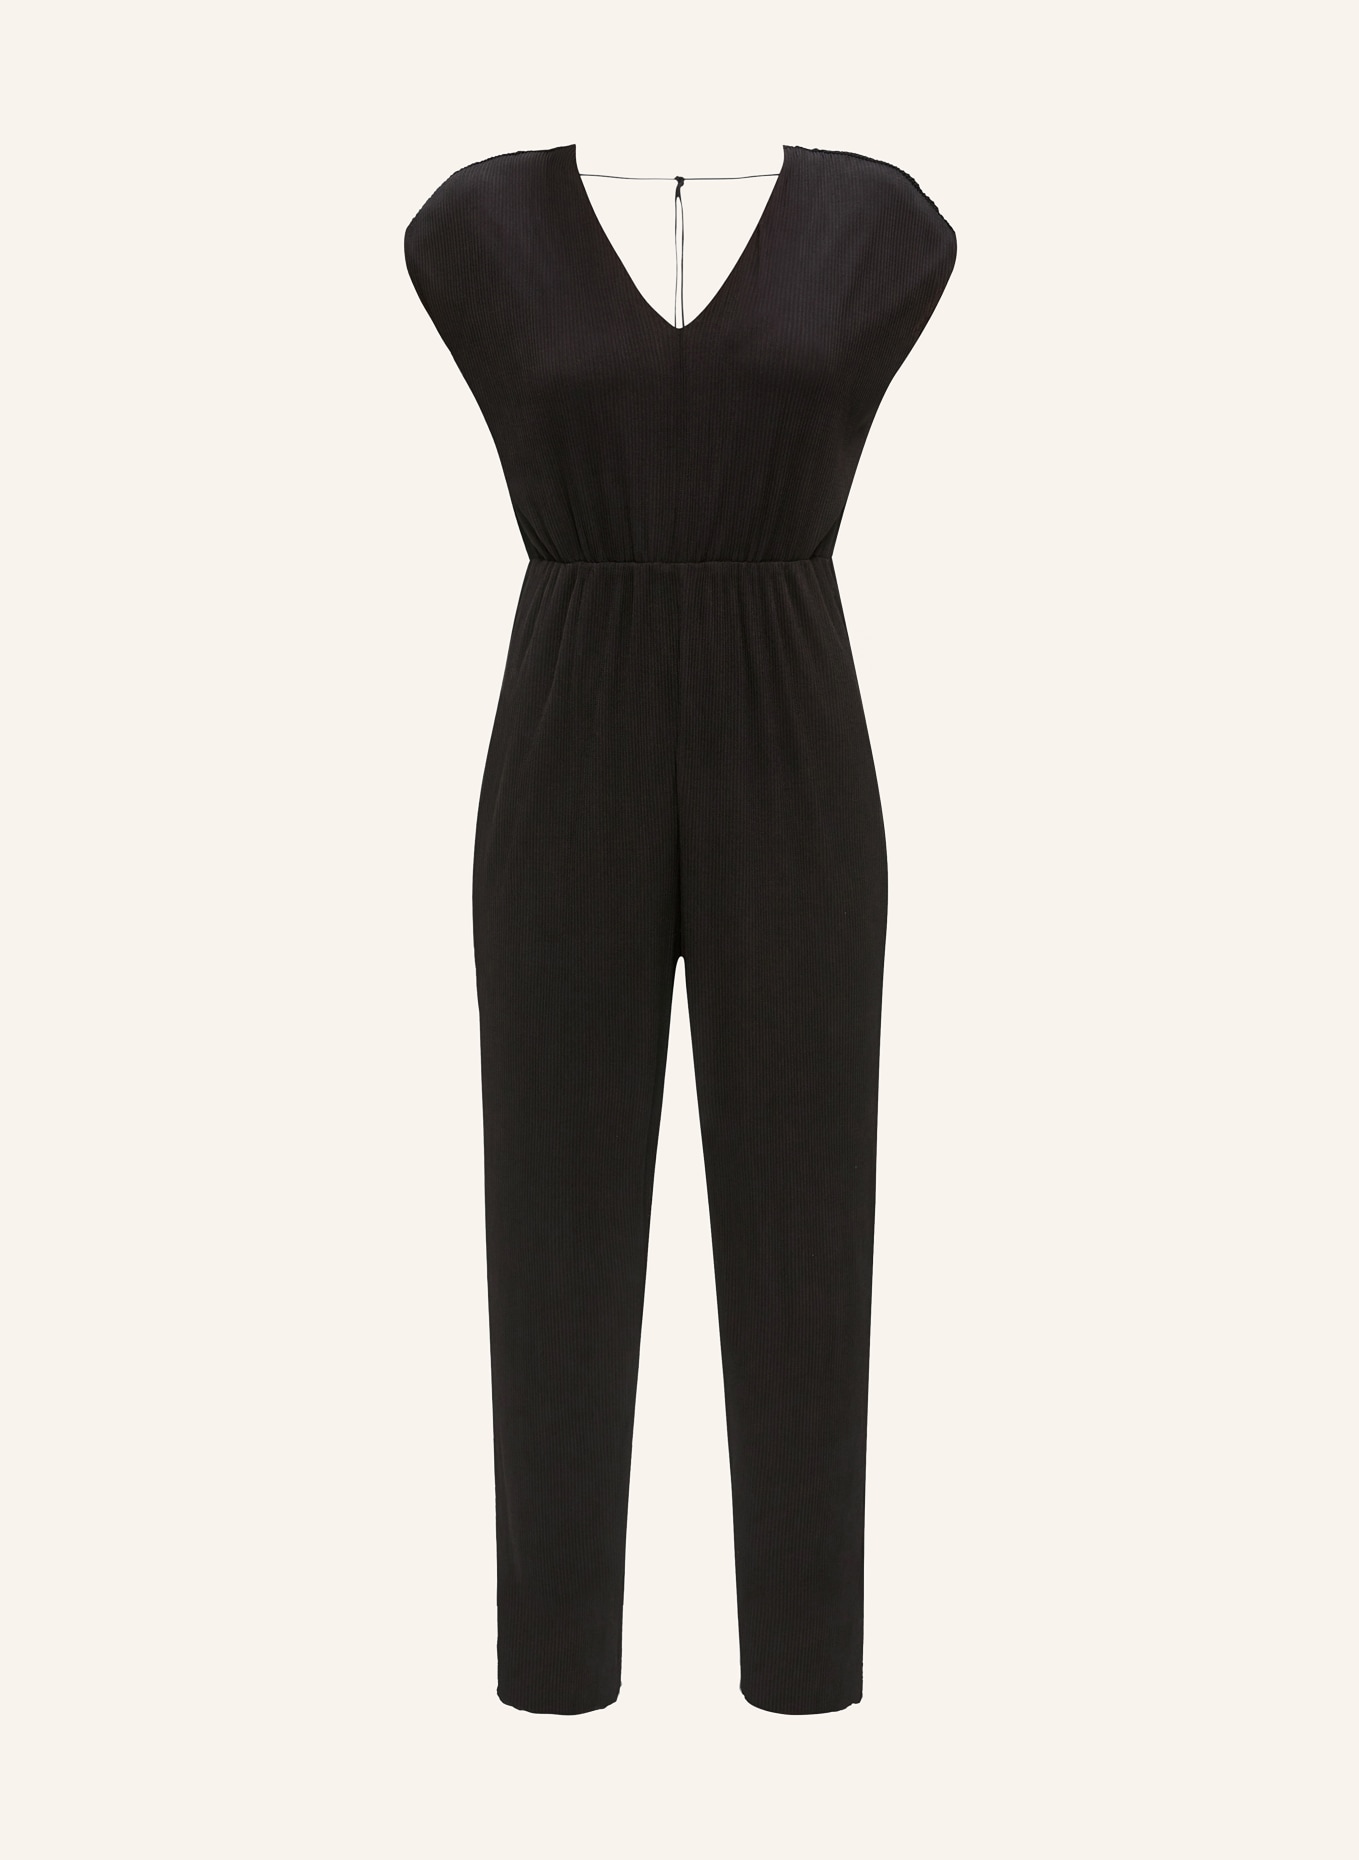 s.Oliver BLACK LABEL Jumpsuit mit Plissees, Farbe: SCHWARZ (Bild 1)